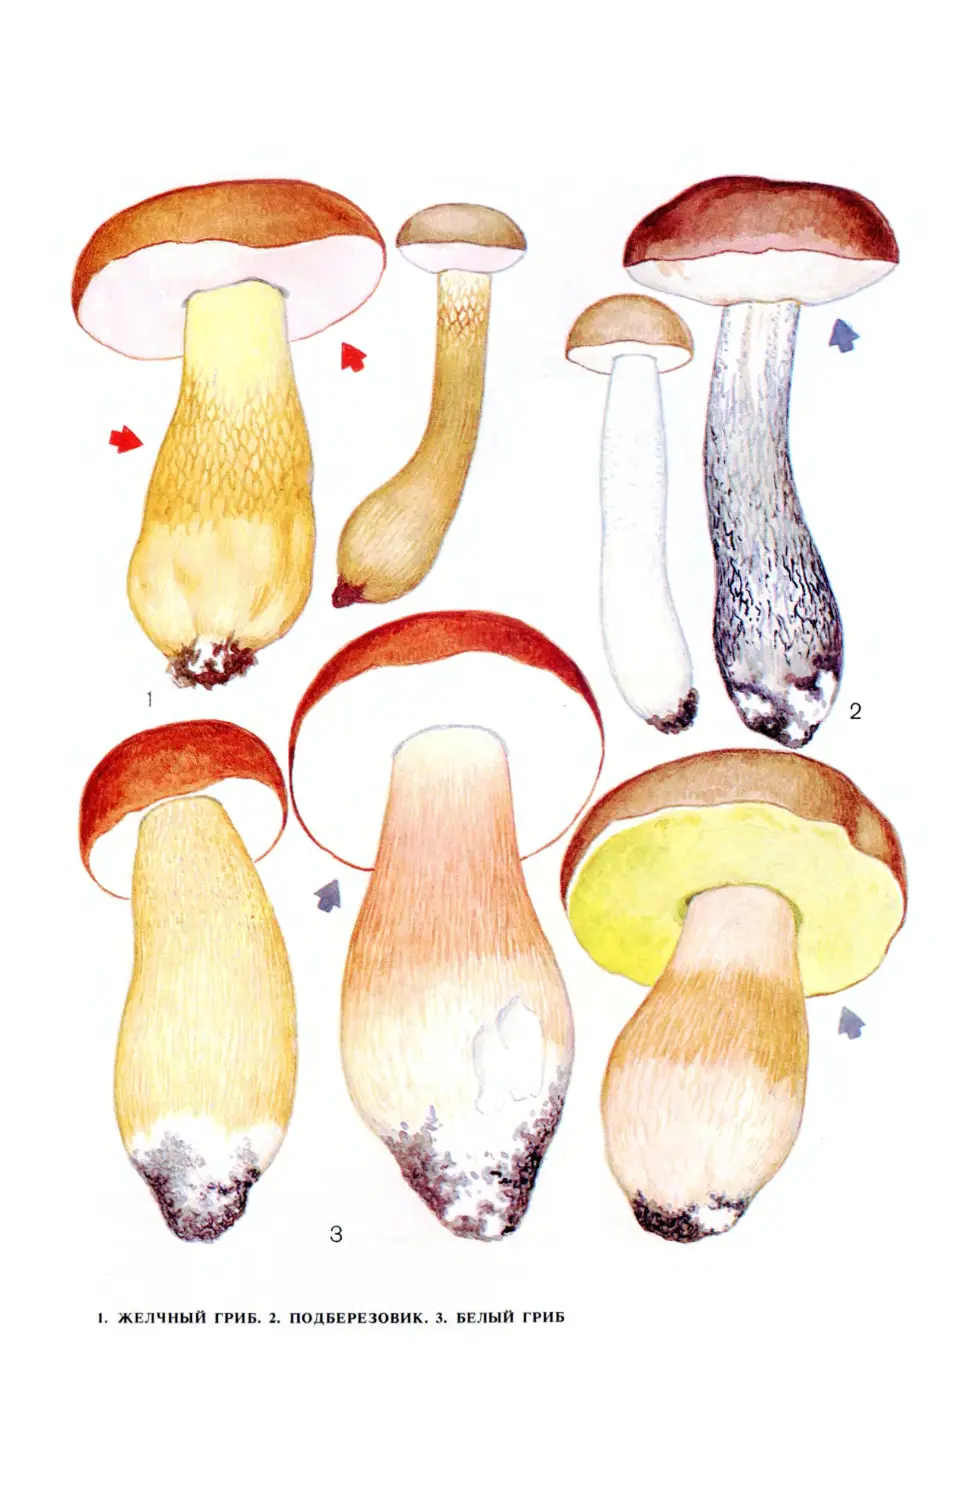 желчный гриб картинки для детей